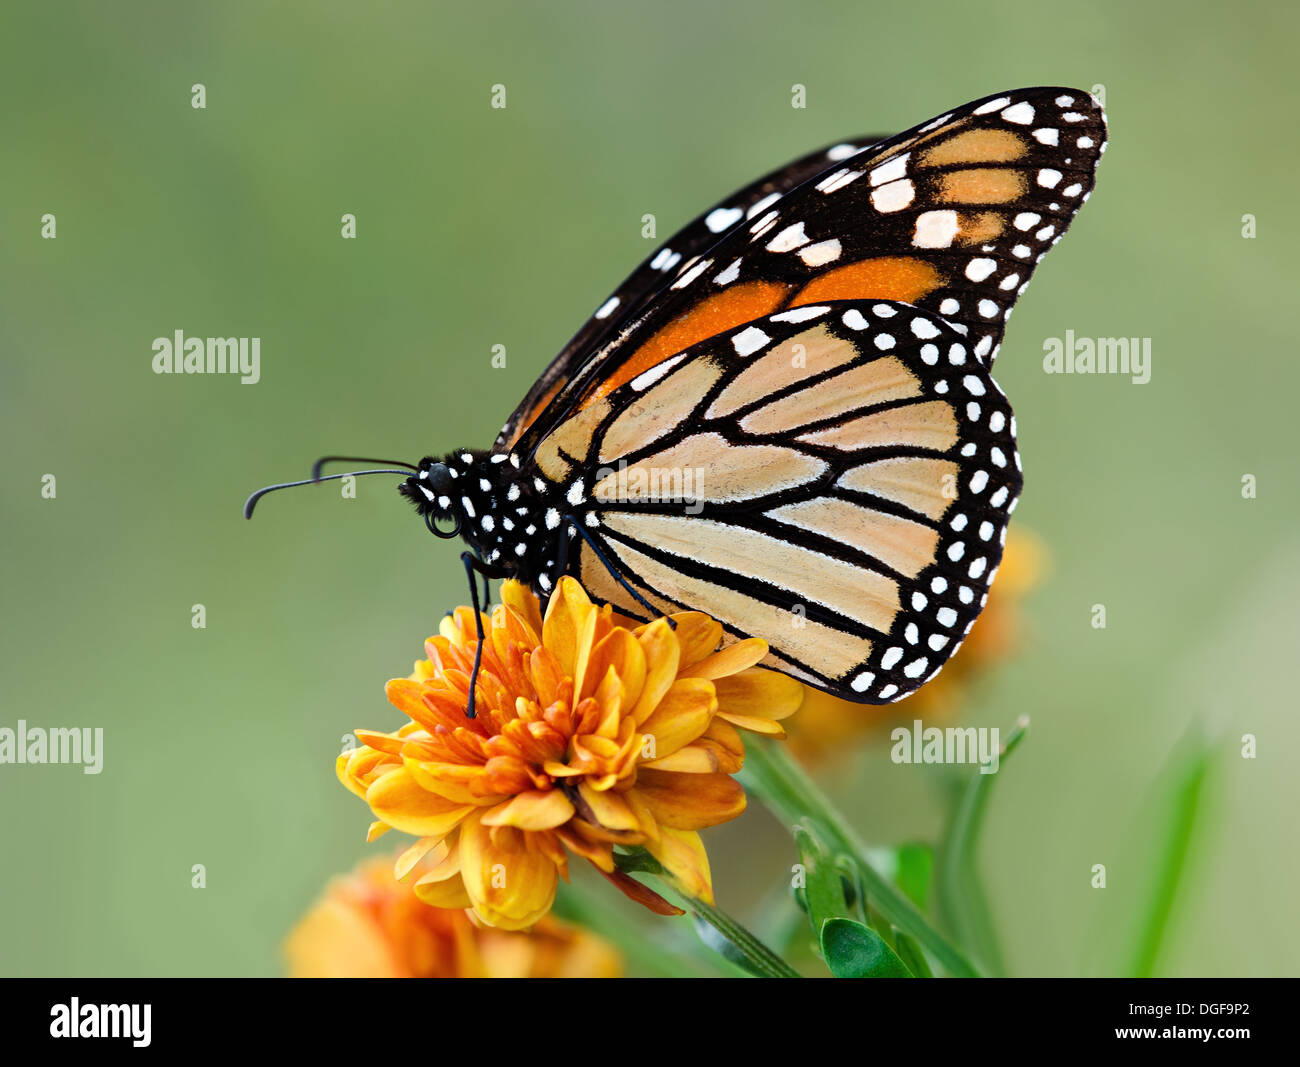 Monarch butterfly (Danaus plexippus) on orange garden flowers during autumn migration Stock Photo